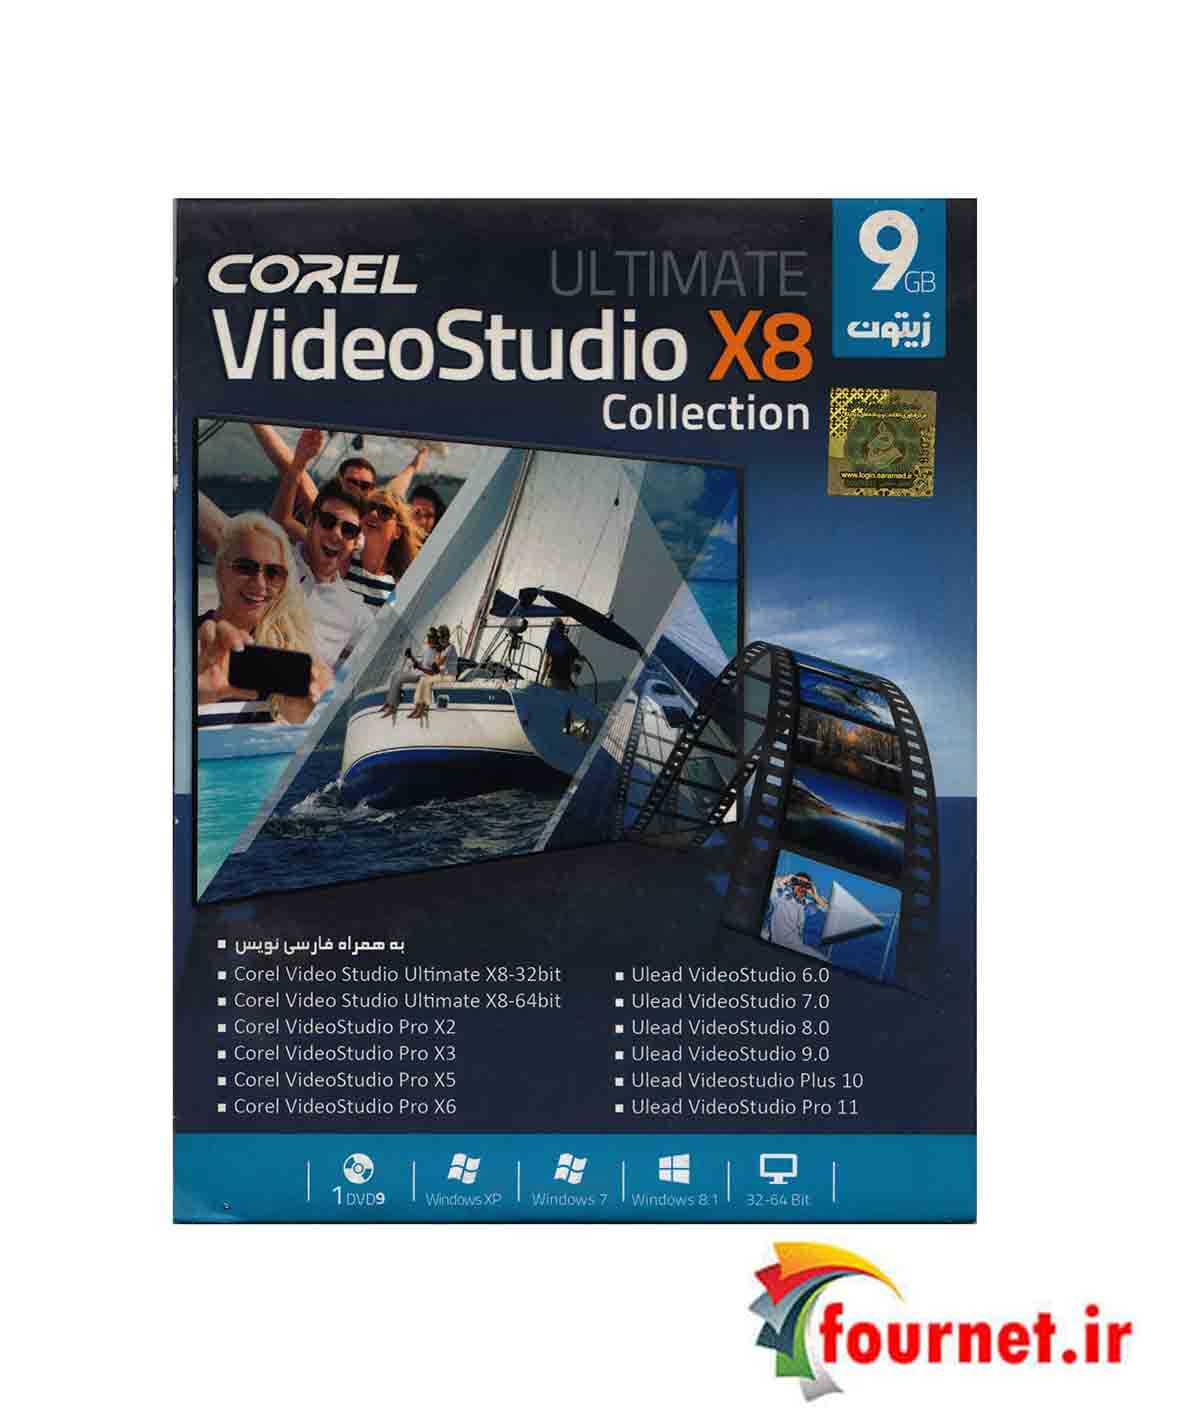 Video Studio X8